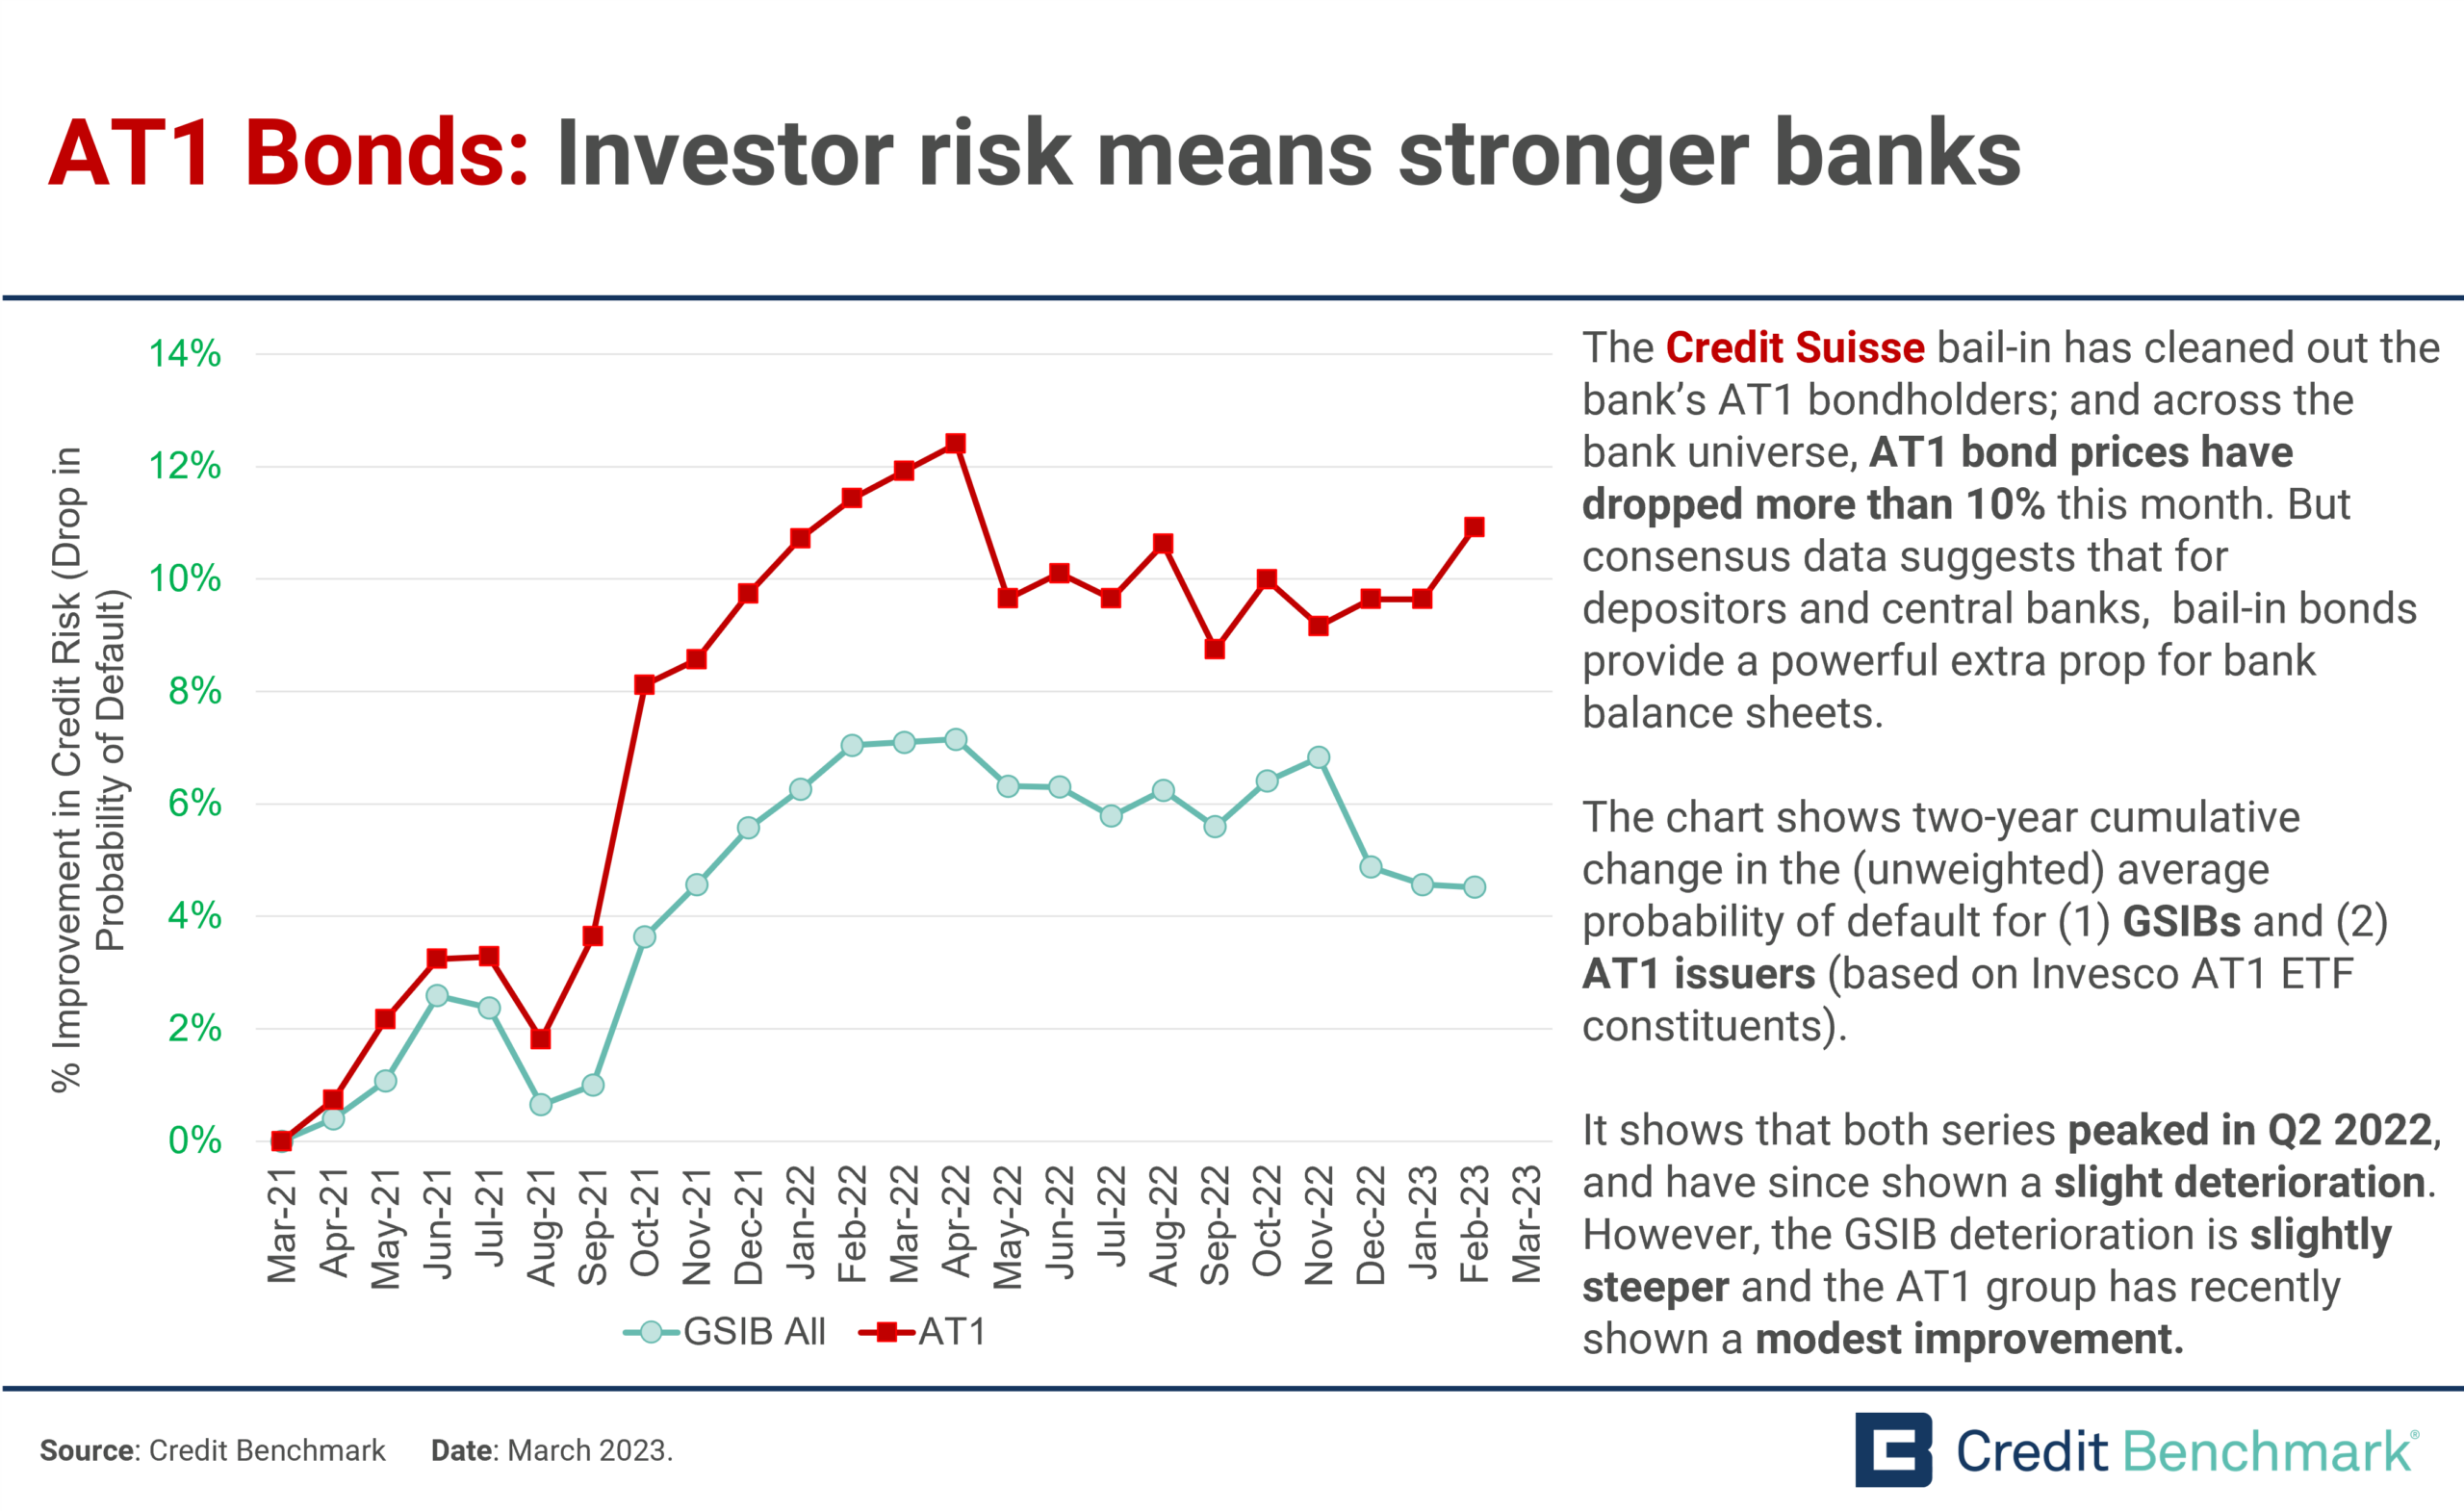 AT1 Bonds: Investor risk means stronger banks